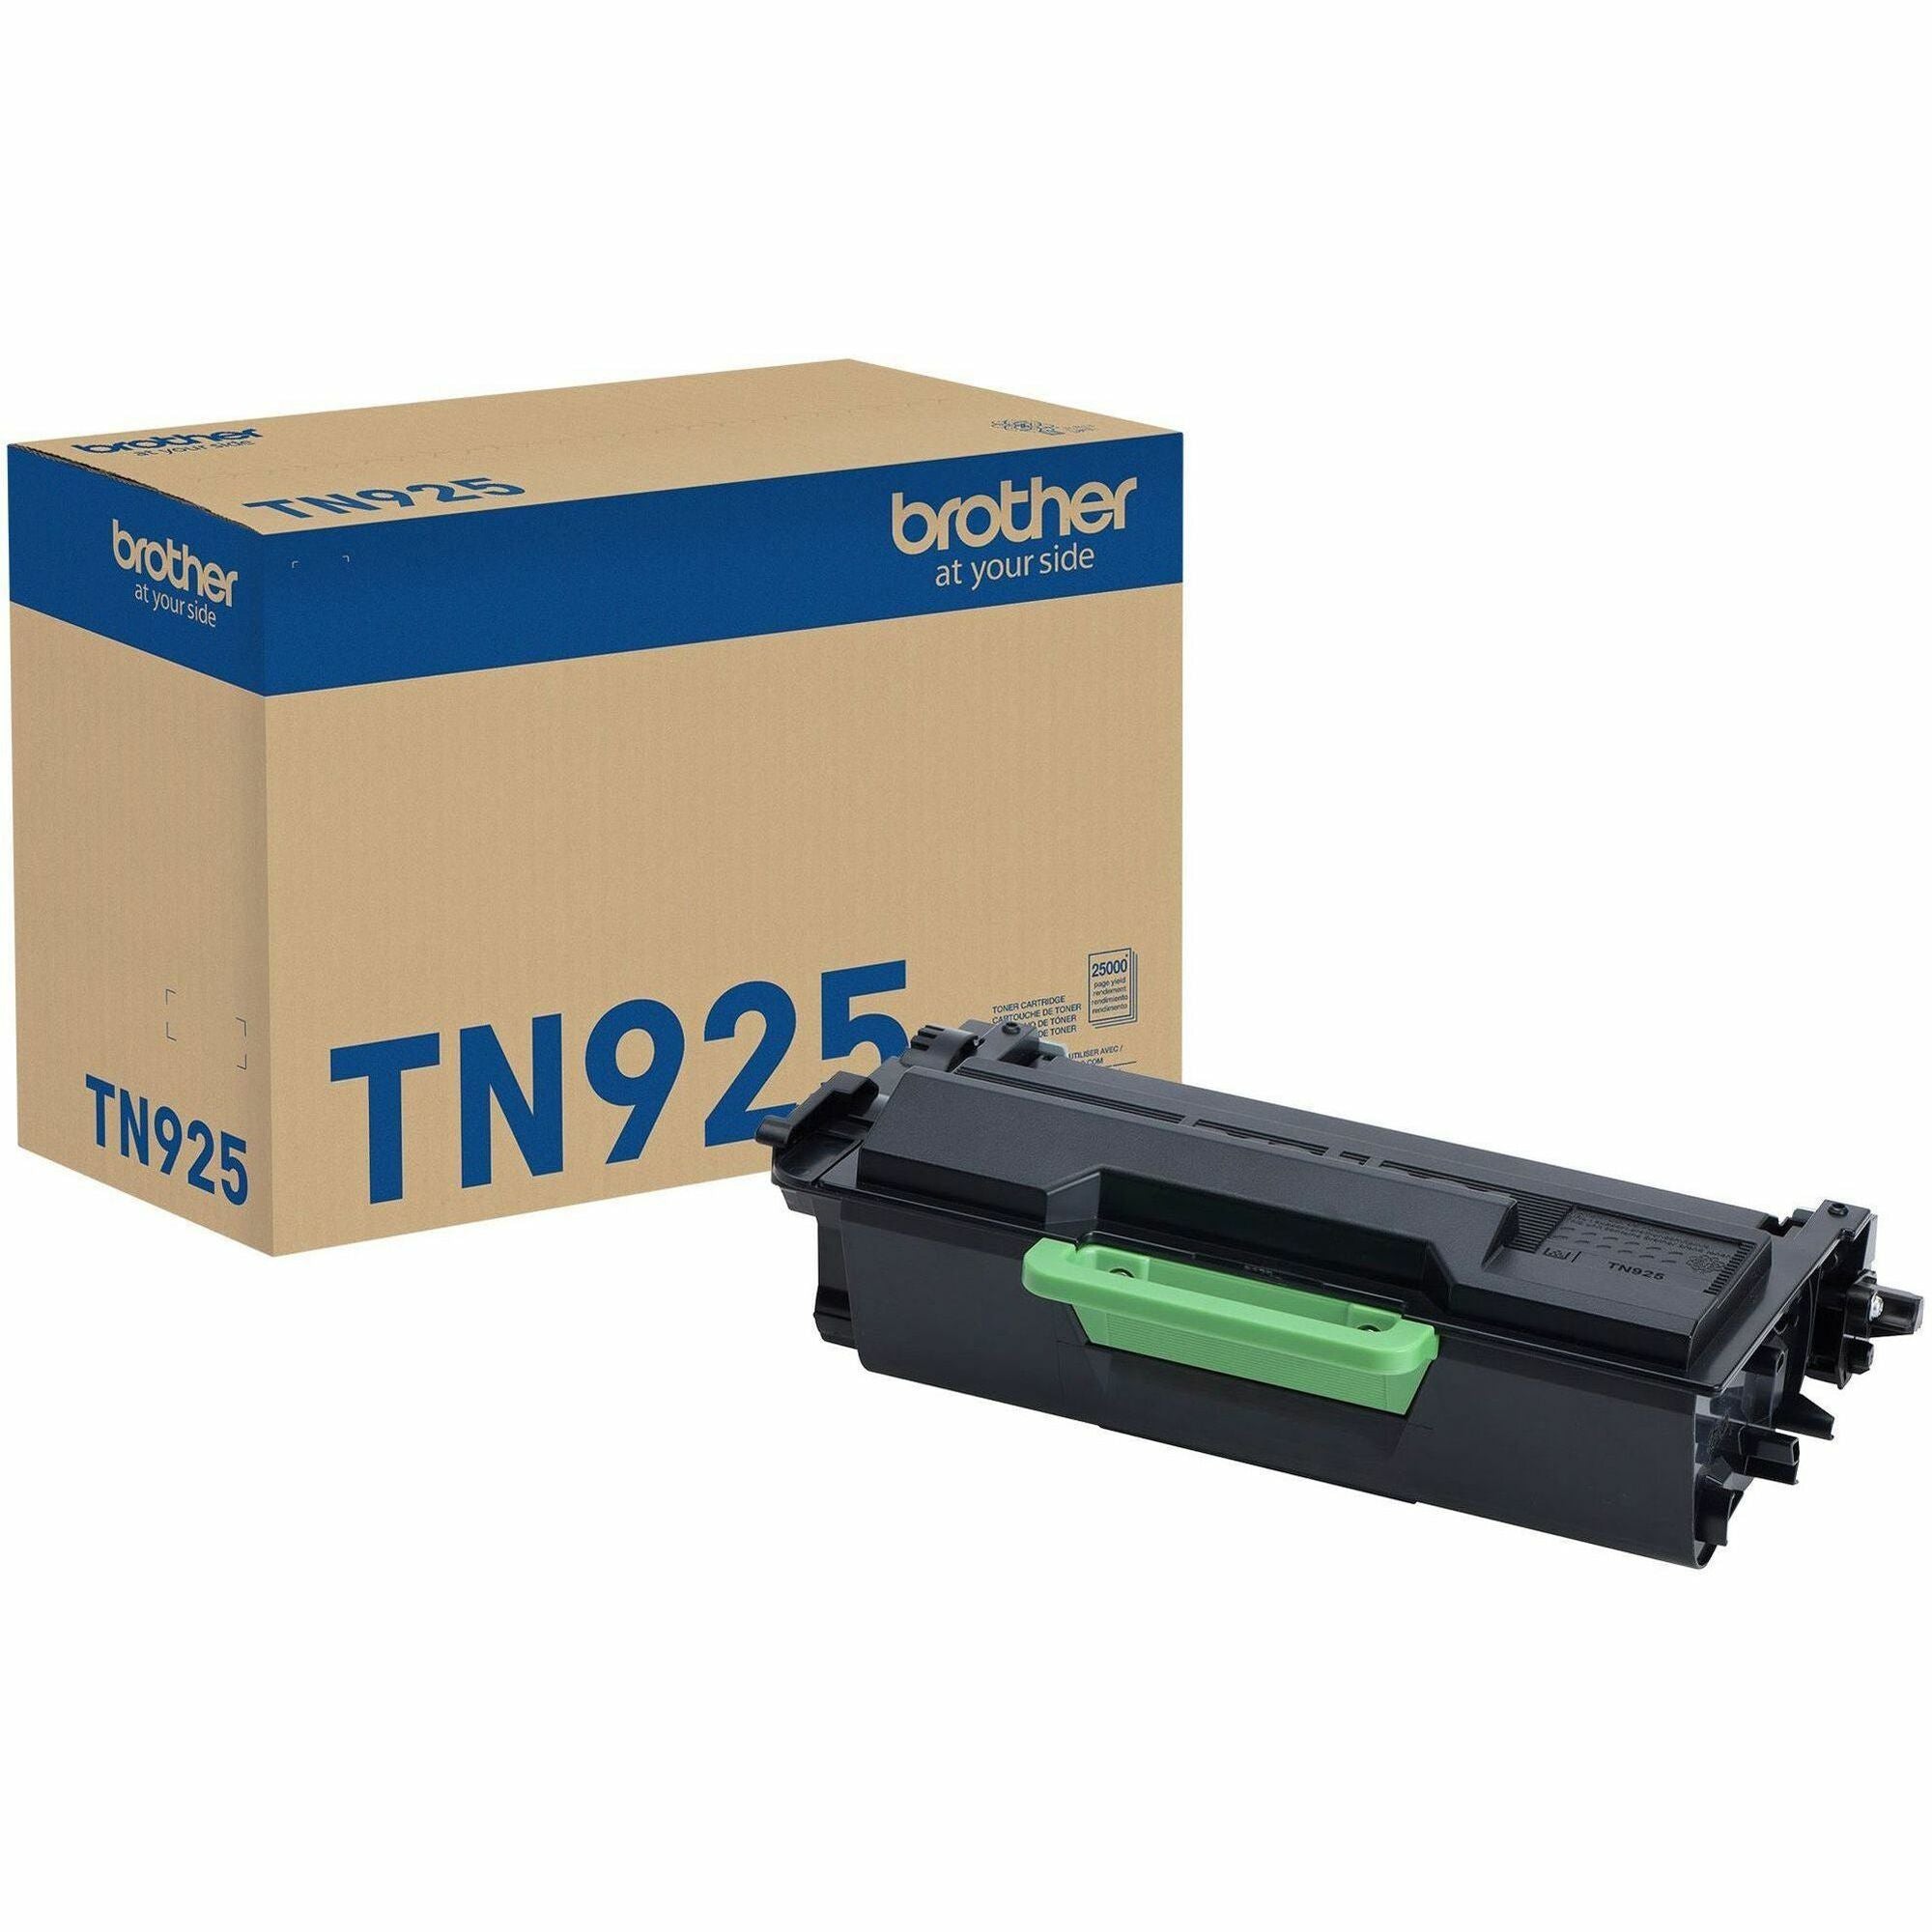 brother-tn925-original-laser-toner-cartridge-black-1-pack-25000-pages_brttn925 - 1